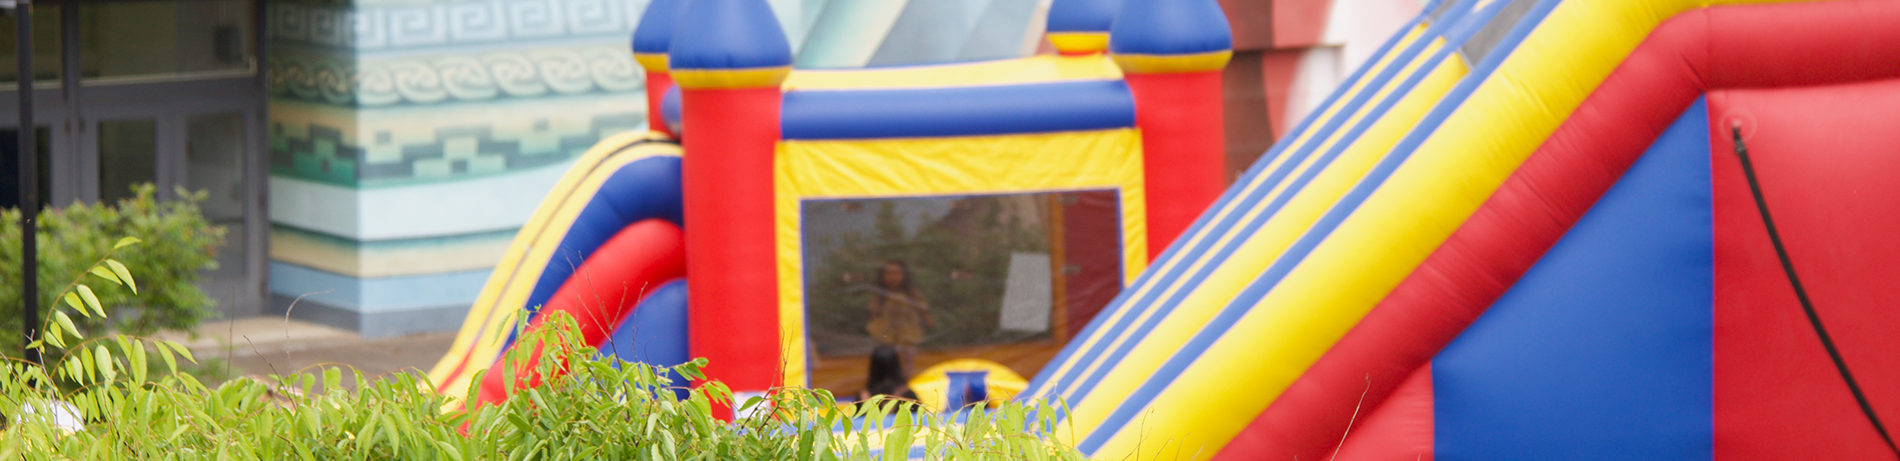 bouncy castles in bristol square